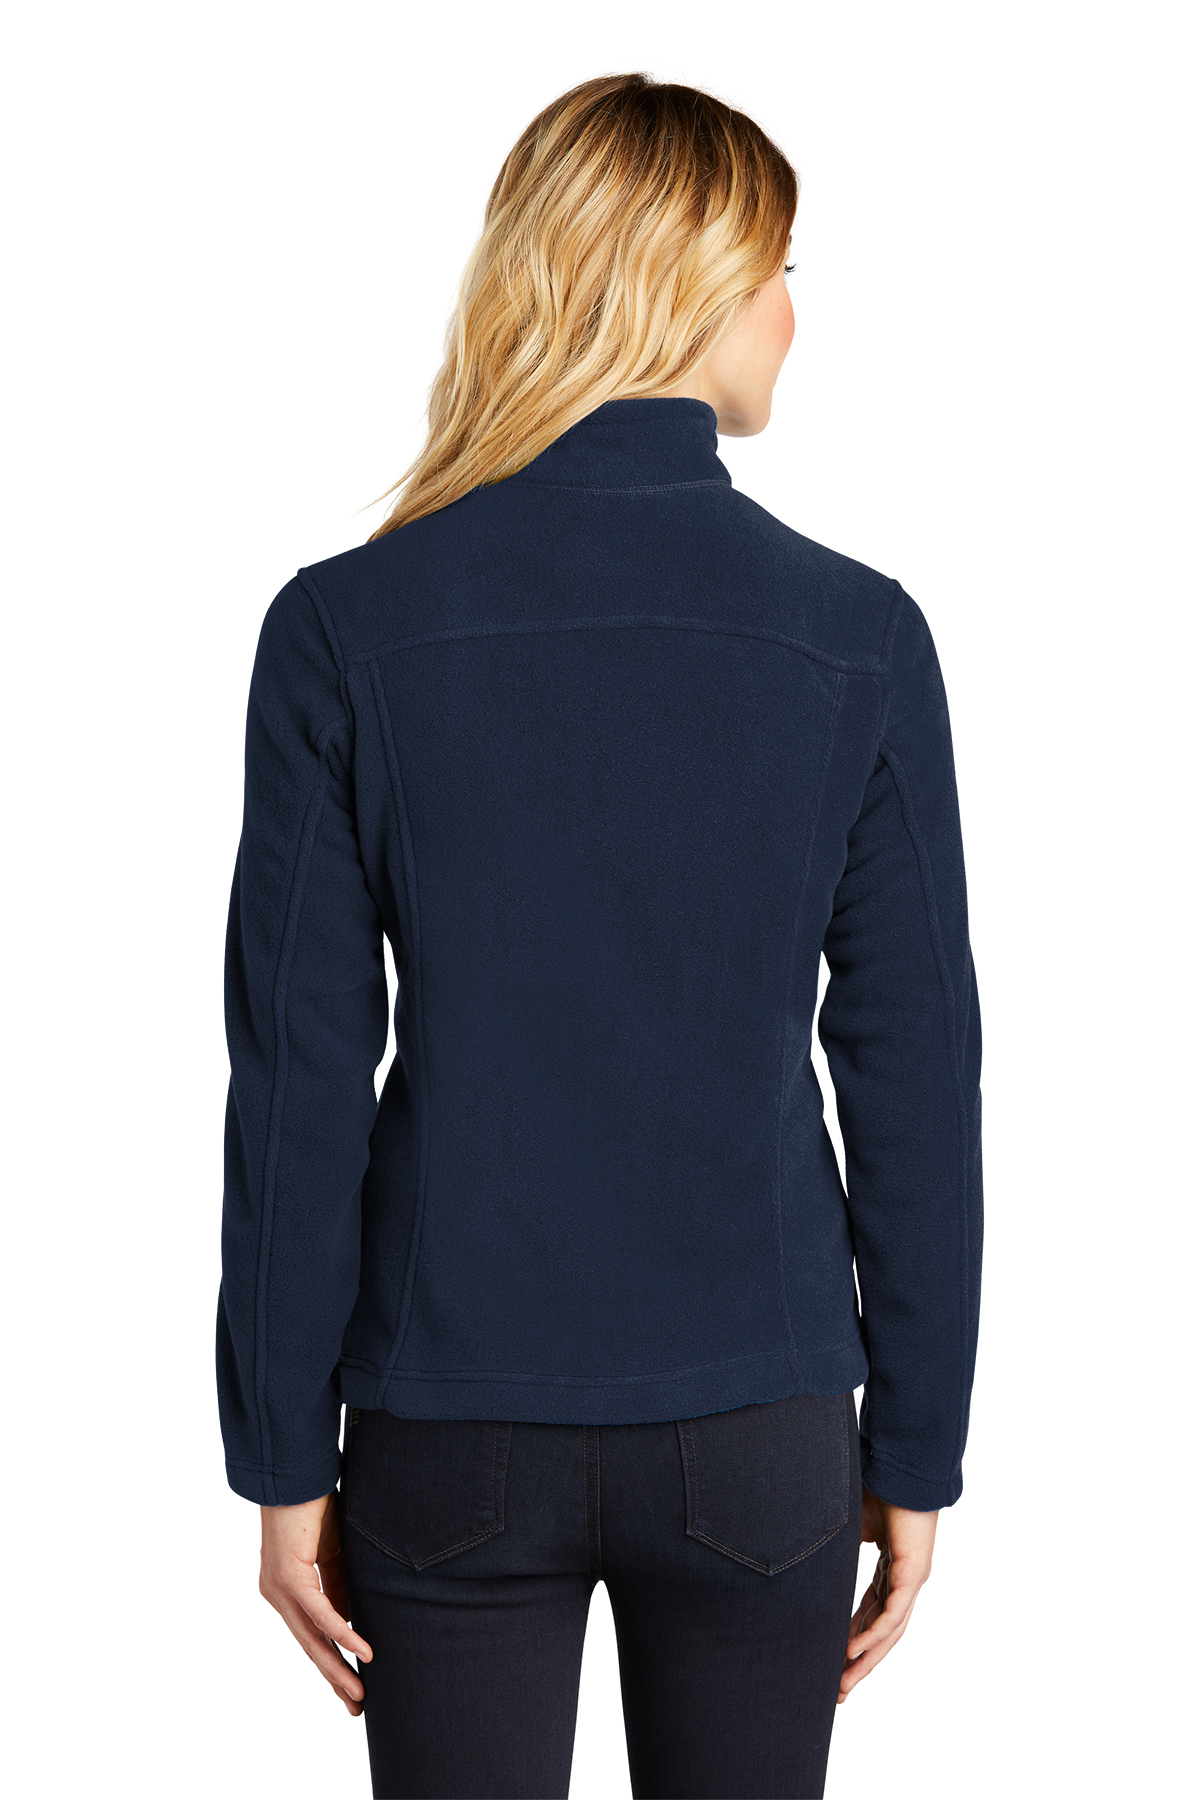 Eddie Bauer - Ladies Full-Zip Fleece Jacket | Product | Company Casuals